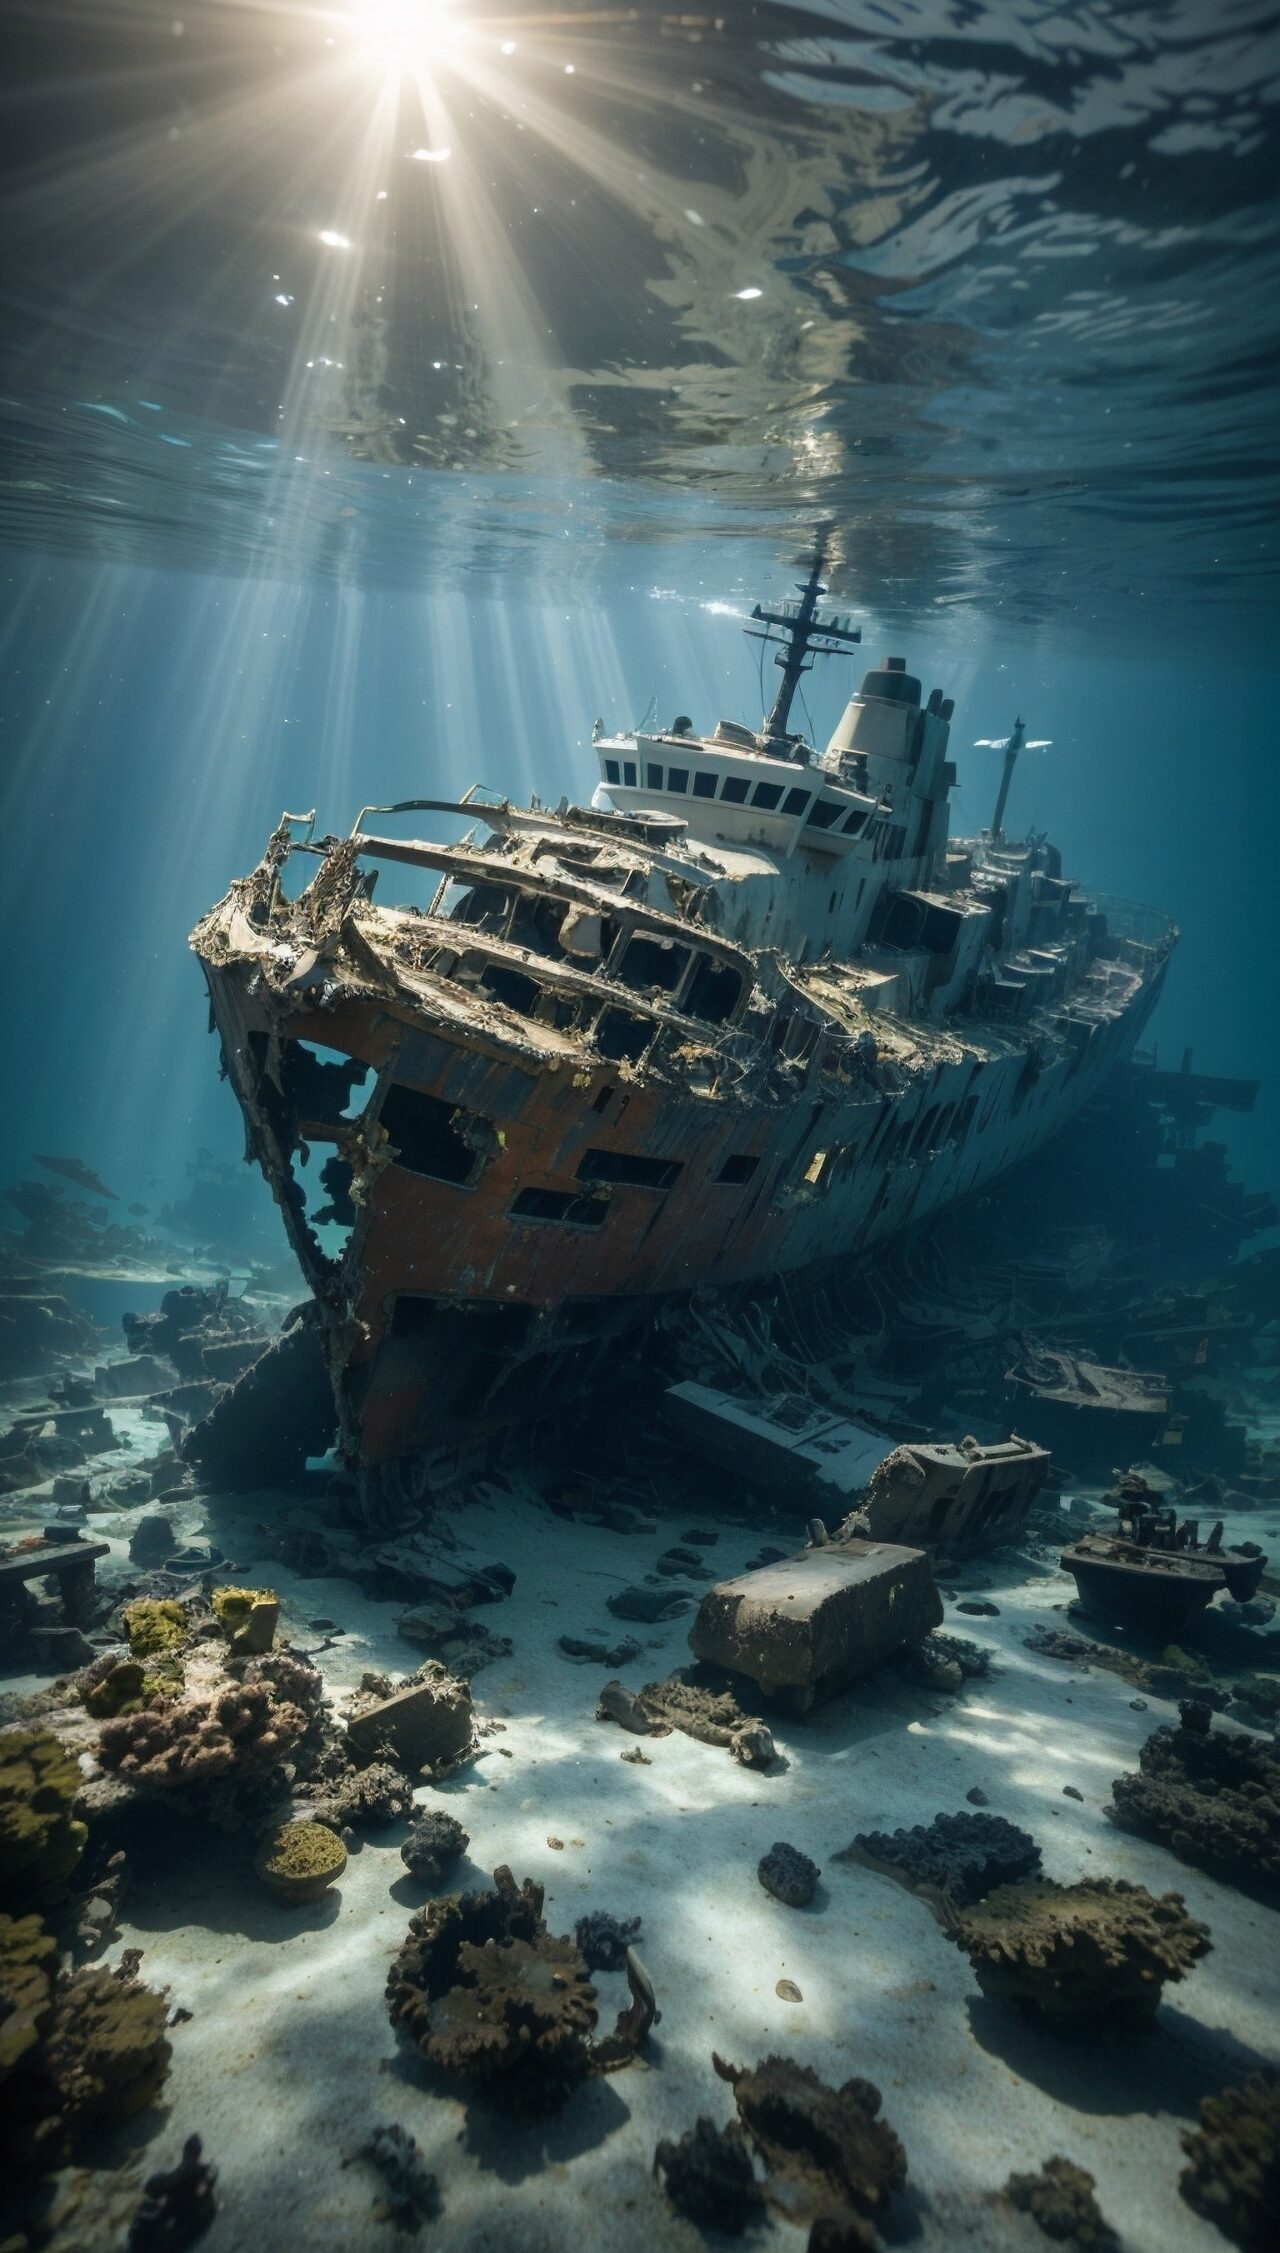 The wreckage of the Bismarck lies on the ocean floor